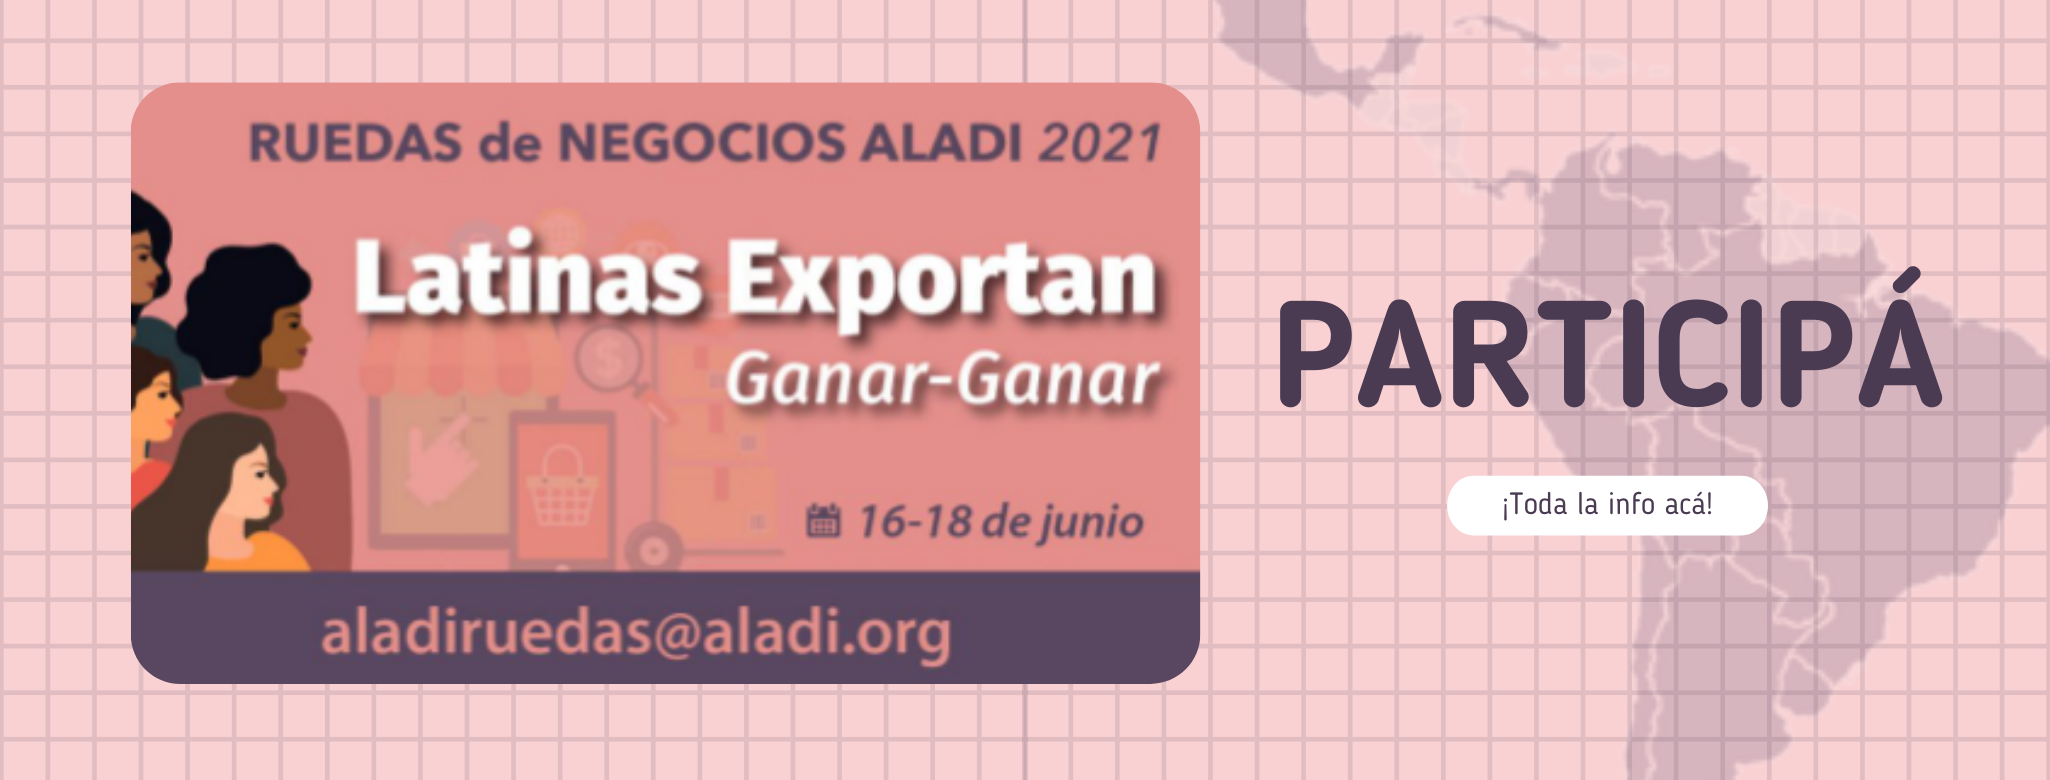 ALADI: Latinas Exportan Ganar-Ganar